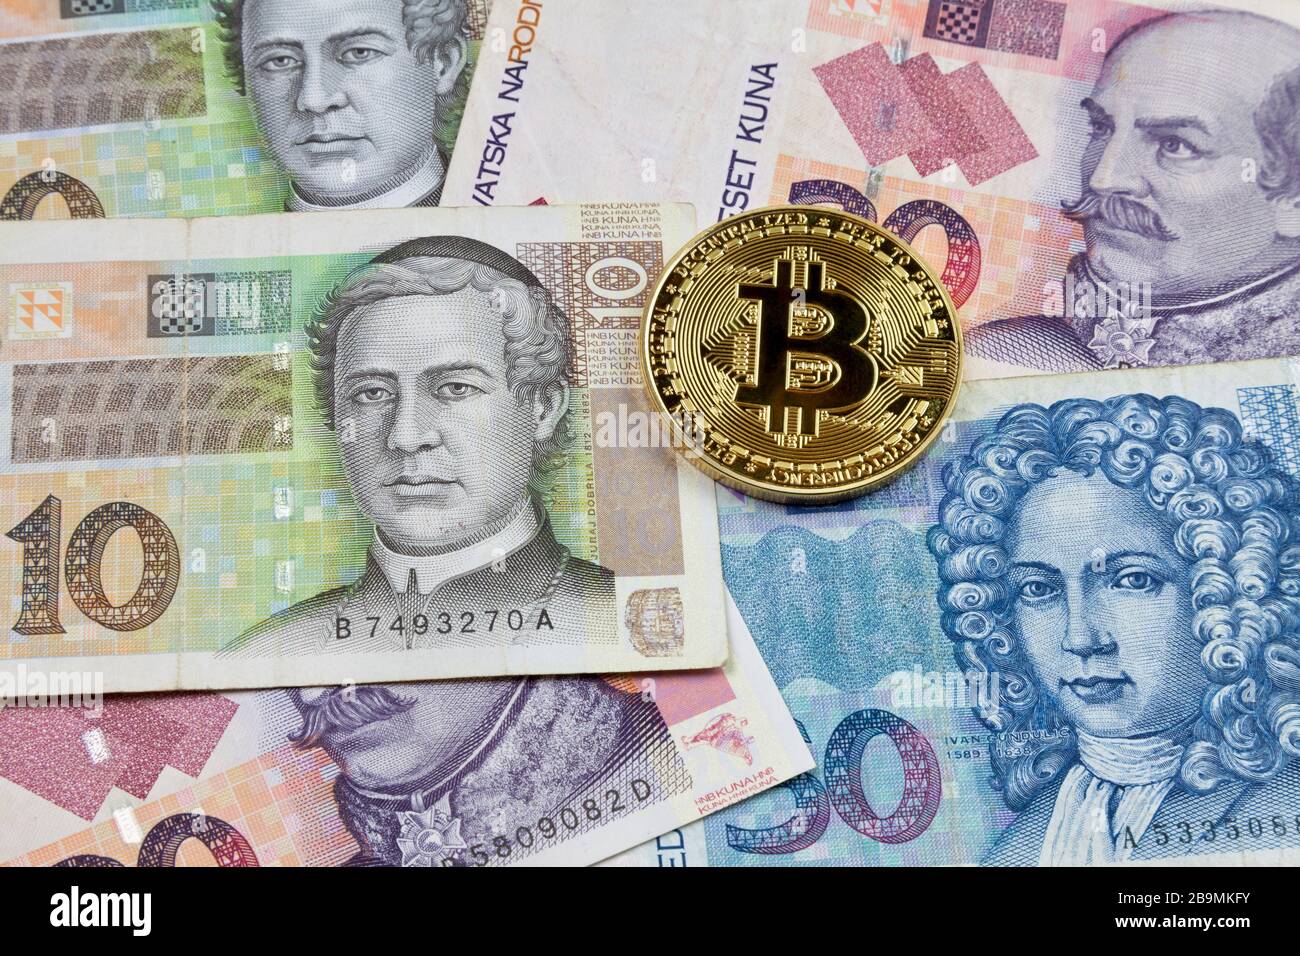 Gros plan sur une pièce de monnaie en Bitcoin doré au-dessus d'une pile de billets Kuna croates. Banque D'Images